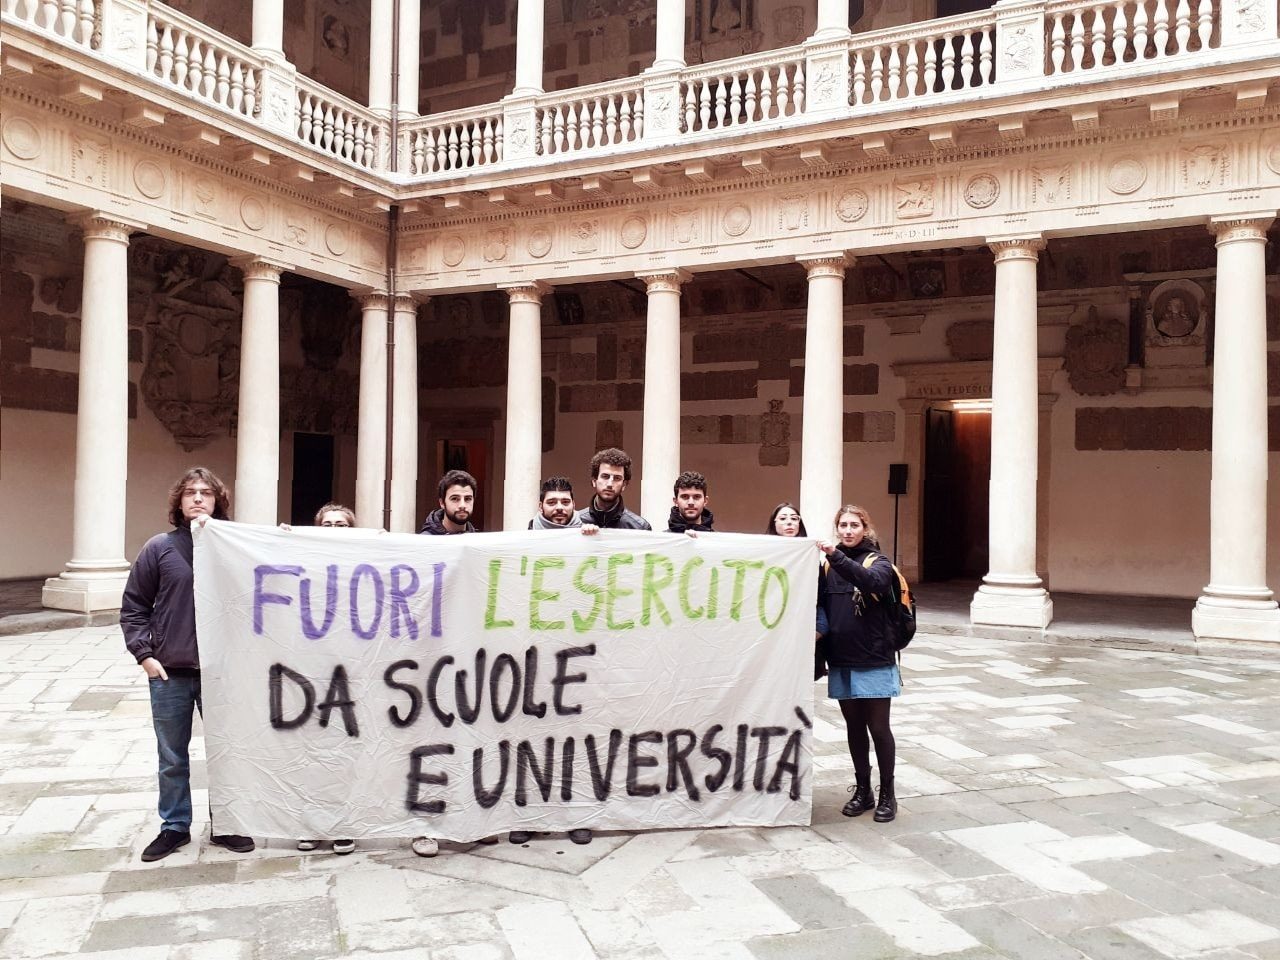 Foto: dalla pagina facebook de “La scuola va alla guerra” – Contestazione di studenti dell’Università di Padova (novembre 2019)